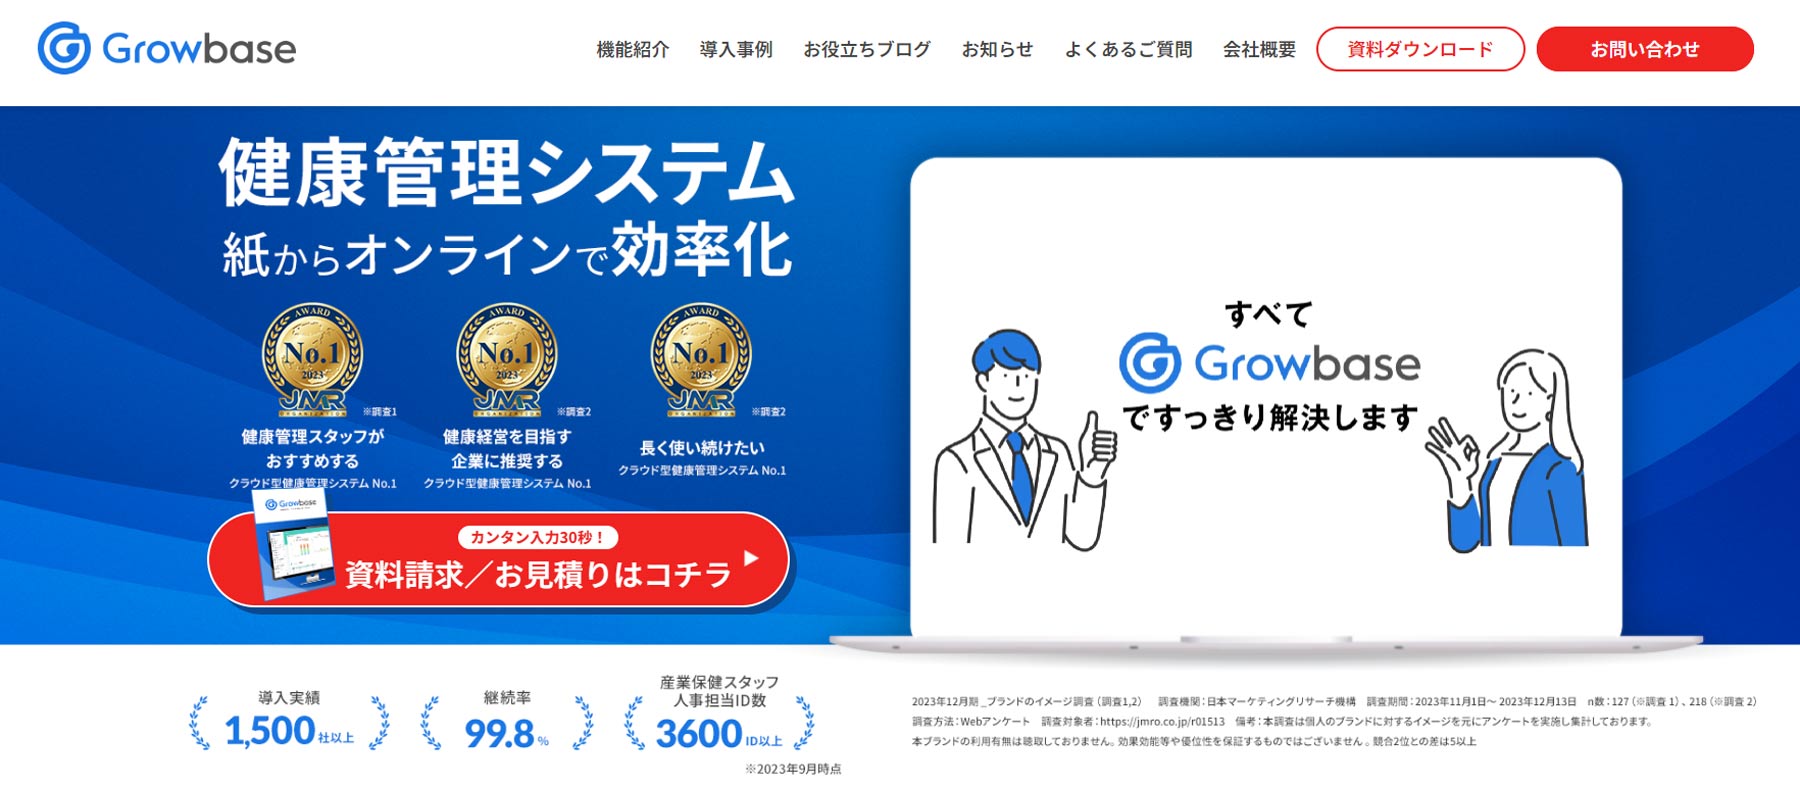 Growbase公式Webサイト